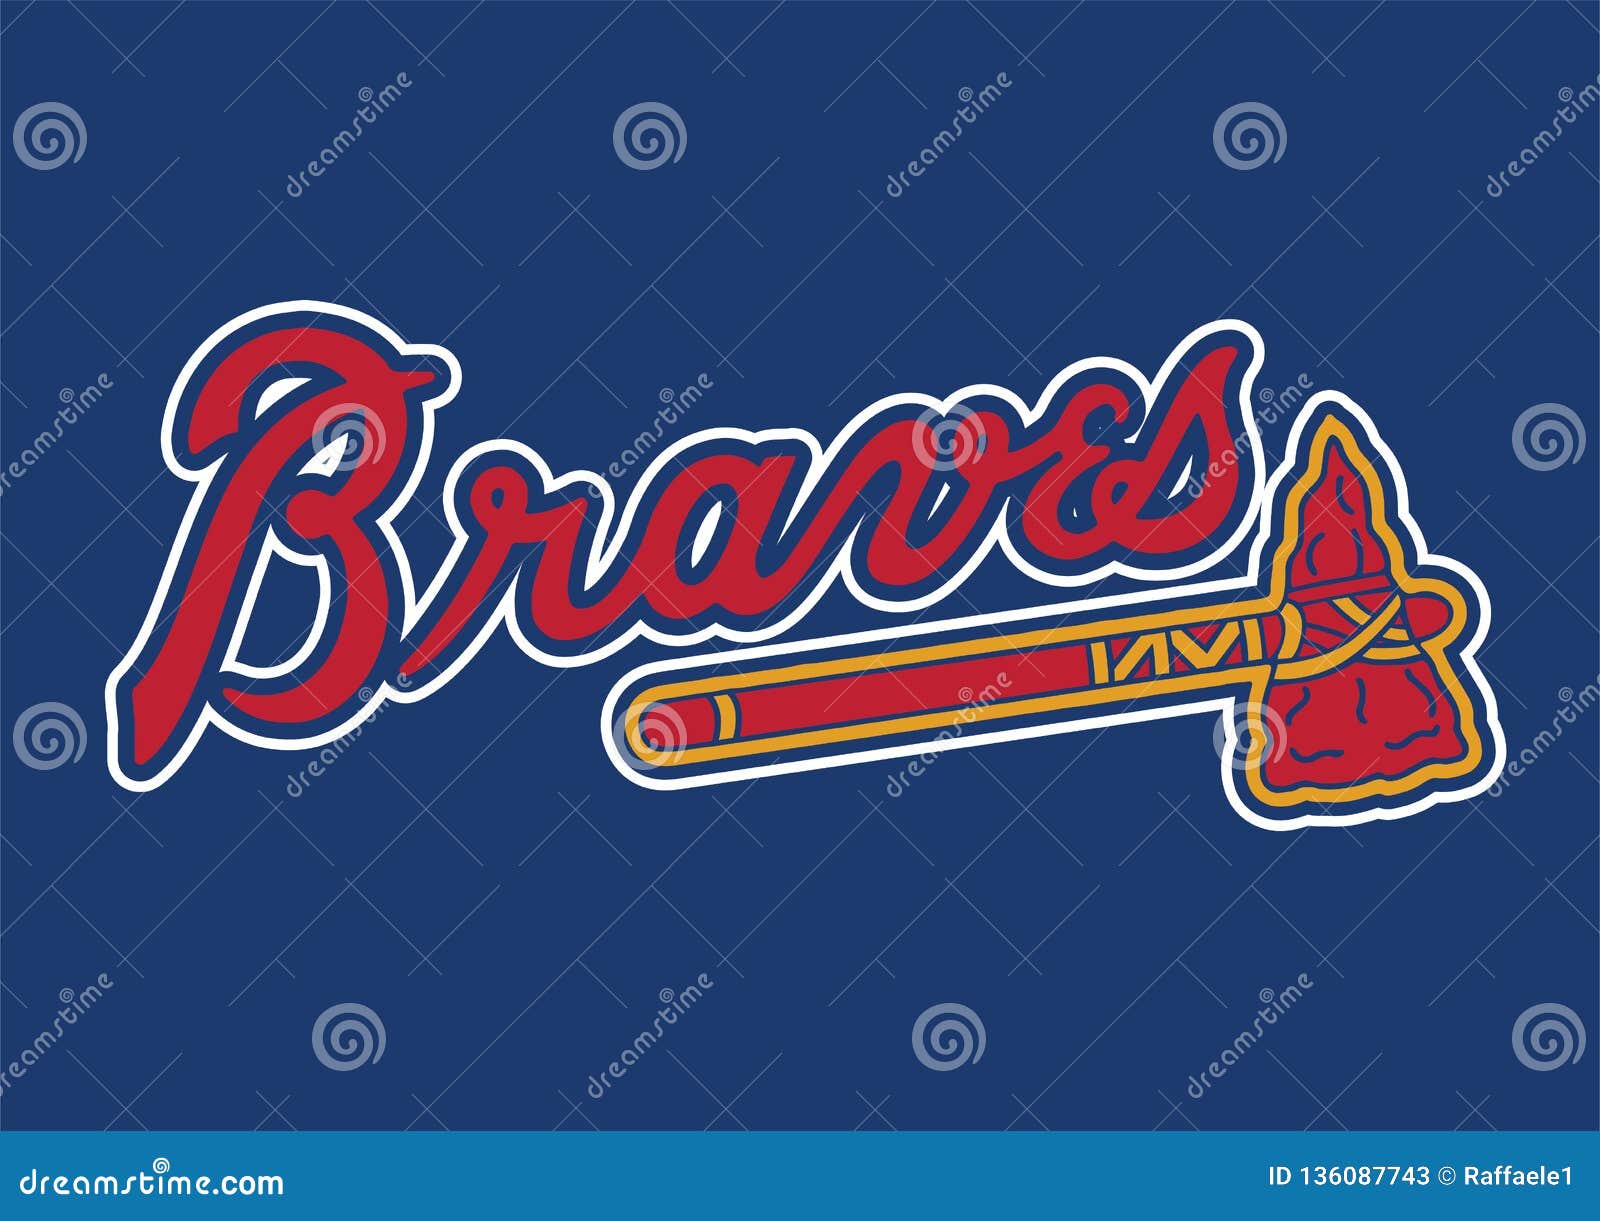 Braves Logo Stock Illustrations – 40 Braves Logo Stock